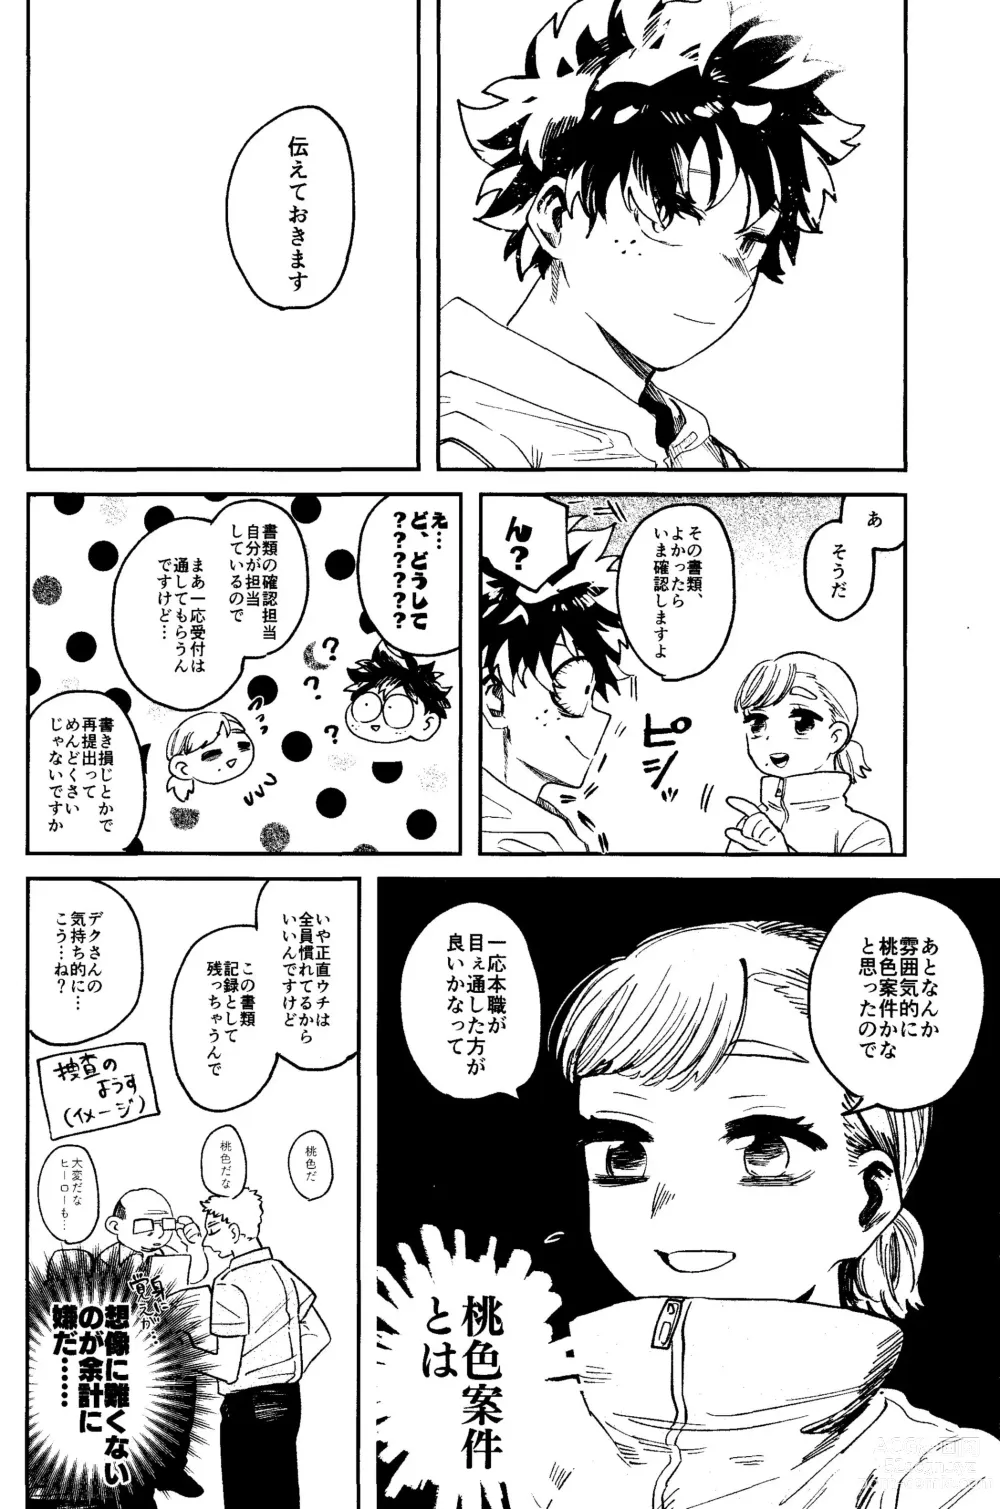 Page 57 of doujinshi HERO taru mono